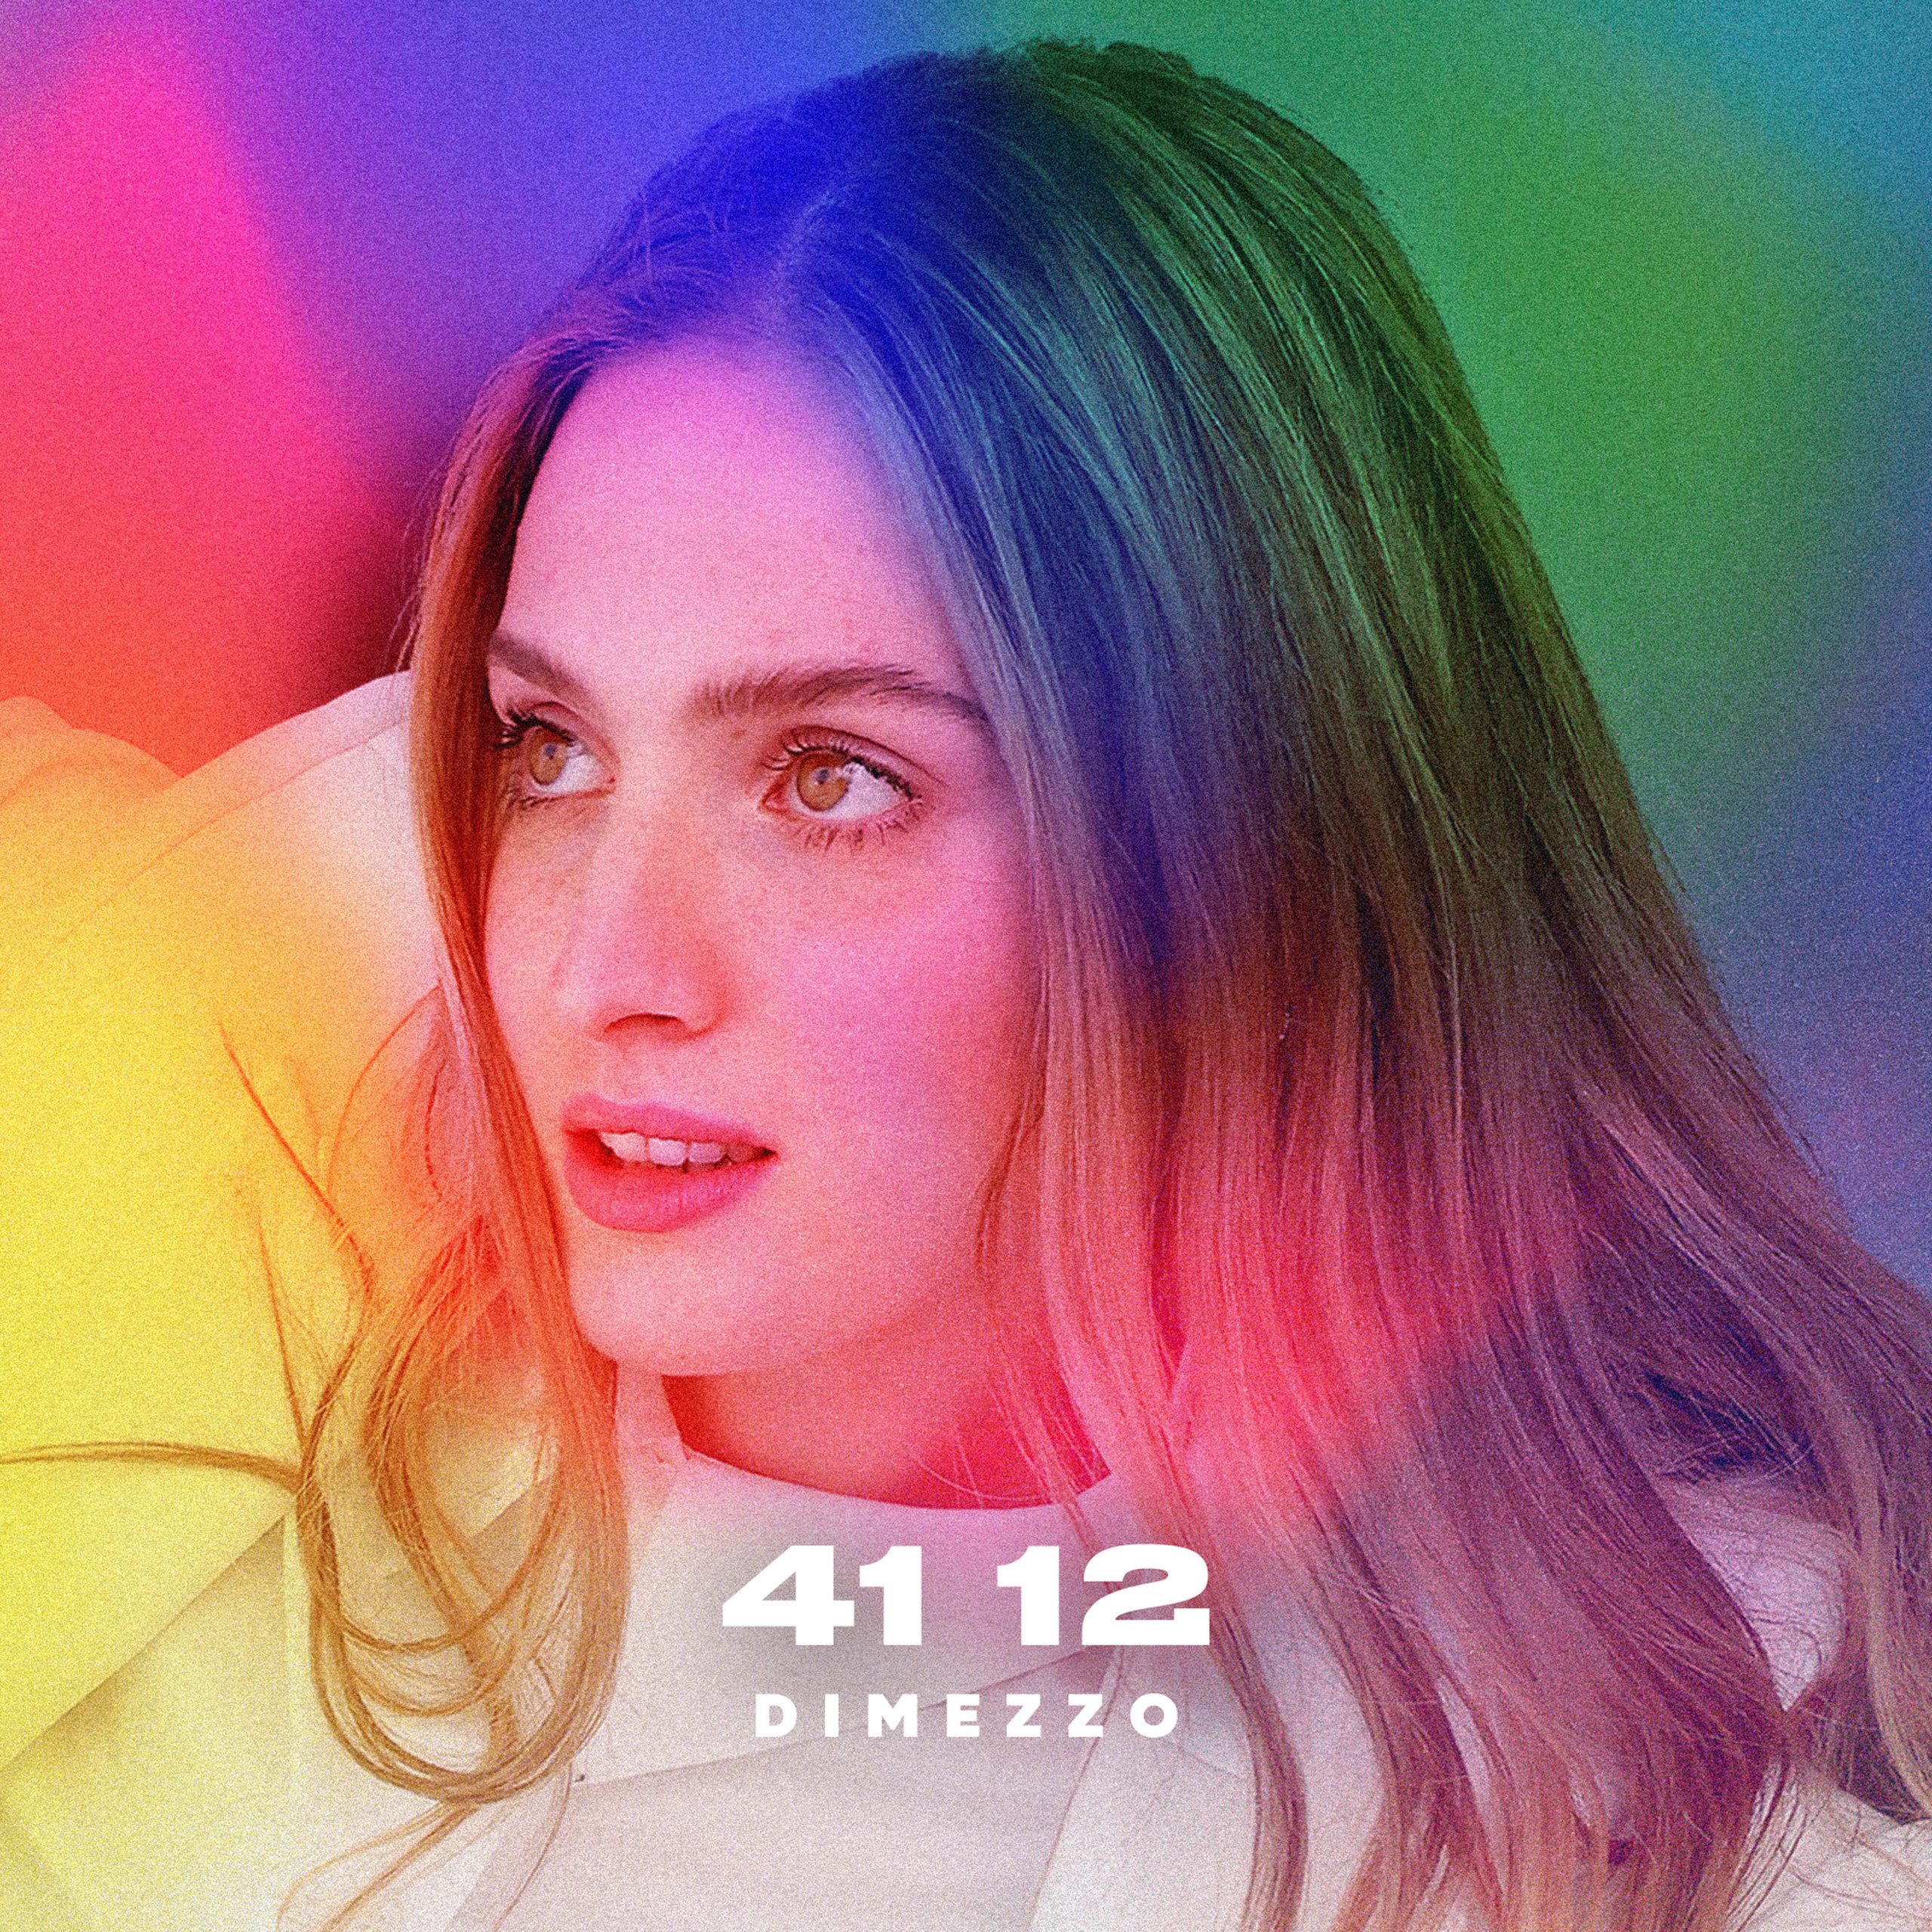 Dimezzo, “41 12” il nuovo singolo e video della cantautrice modenese